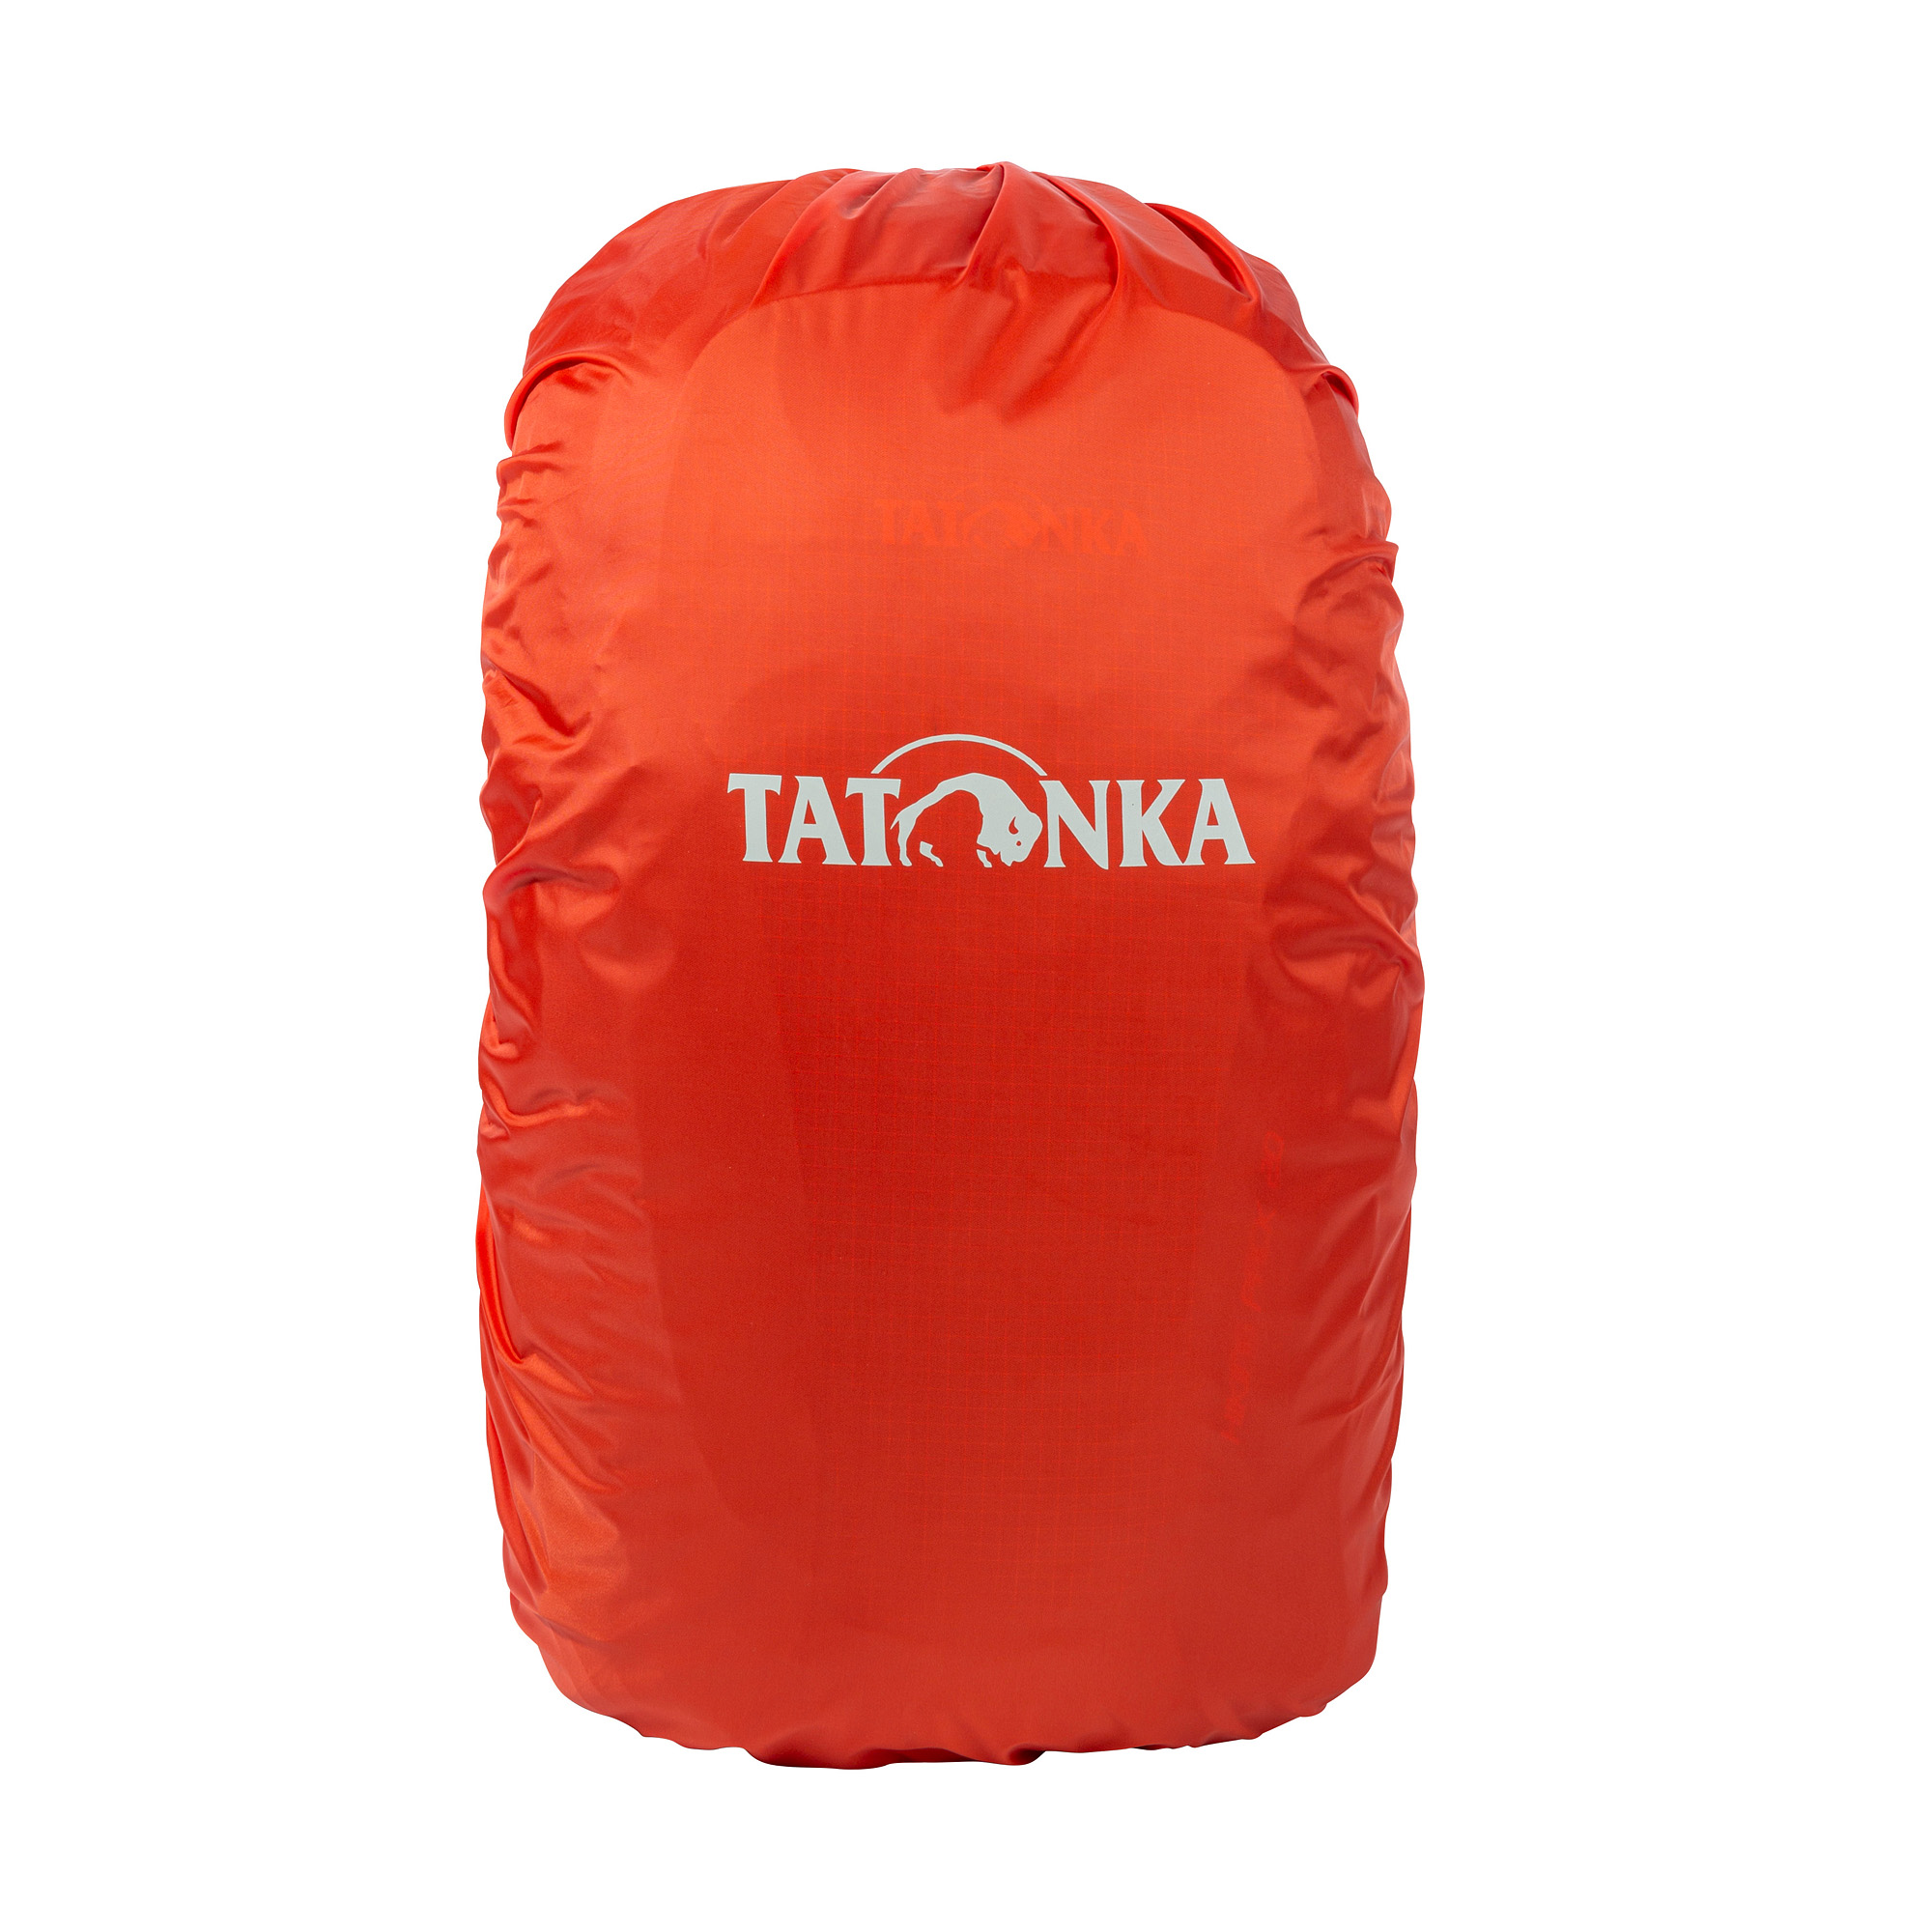 Tatonka Rain Cover 20-30 red orange rot Rucksack-Zubehör 4013236336573